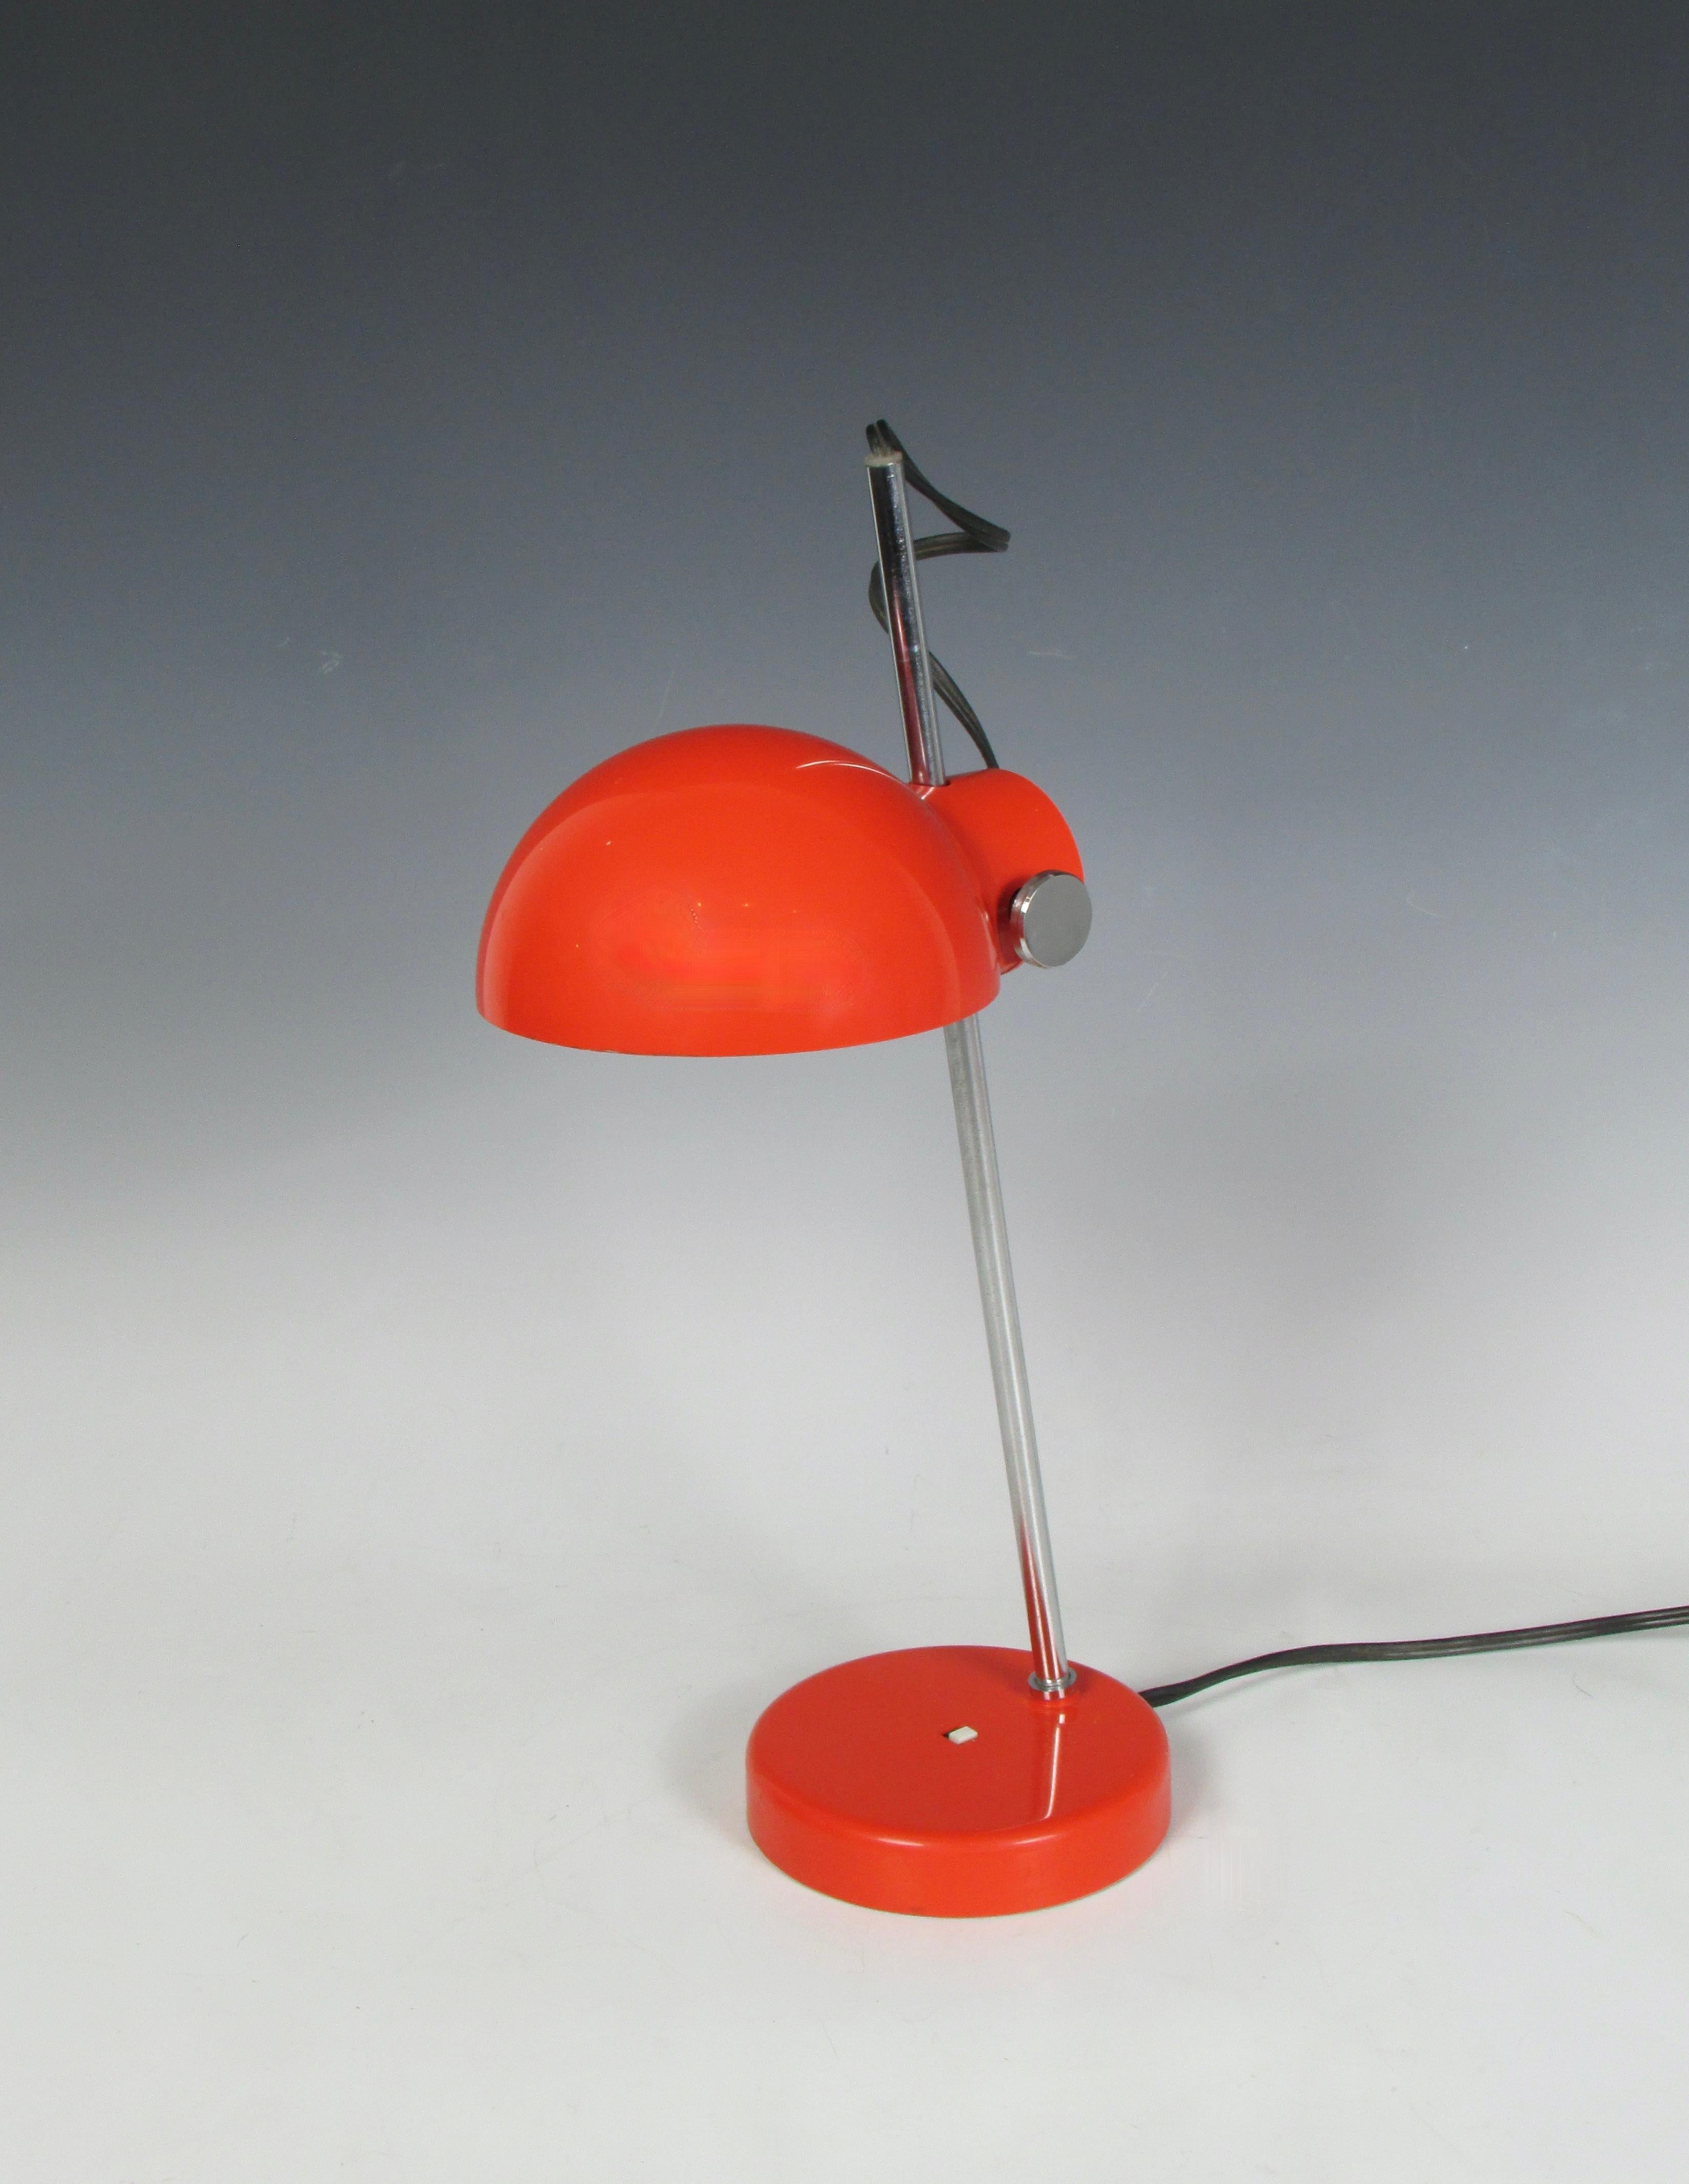 Weltraumzeitalter-Lampe, hergestellt in Japan für Lightolier. Der gewichtete Stahlsockel trägt einen verchromten Schaft, der den verstellbaren Kunststoffschirm hält.